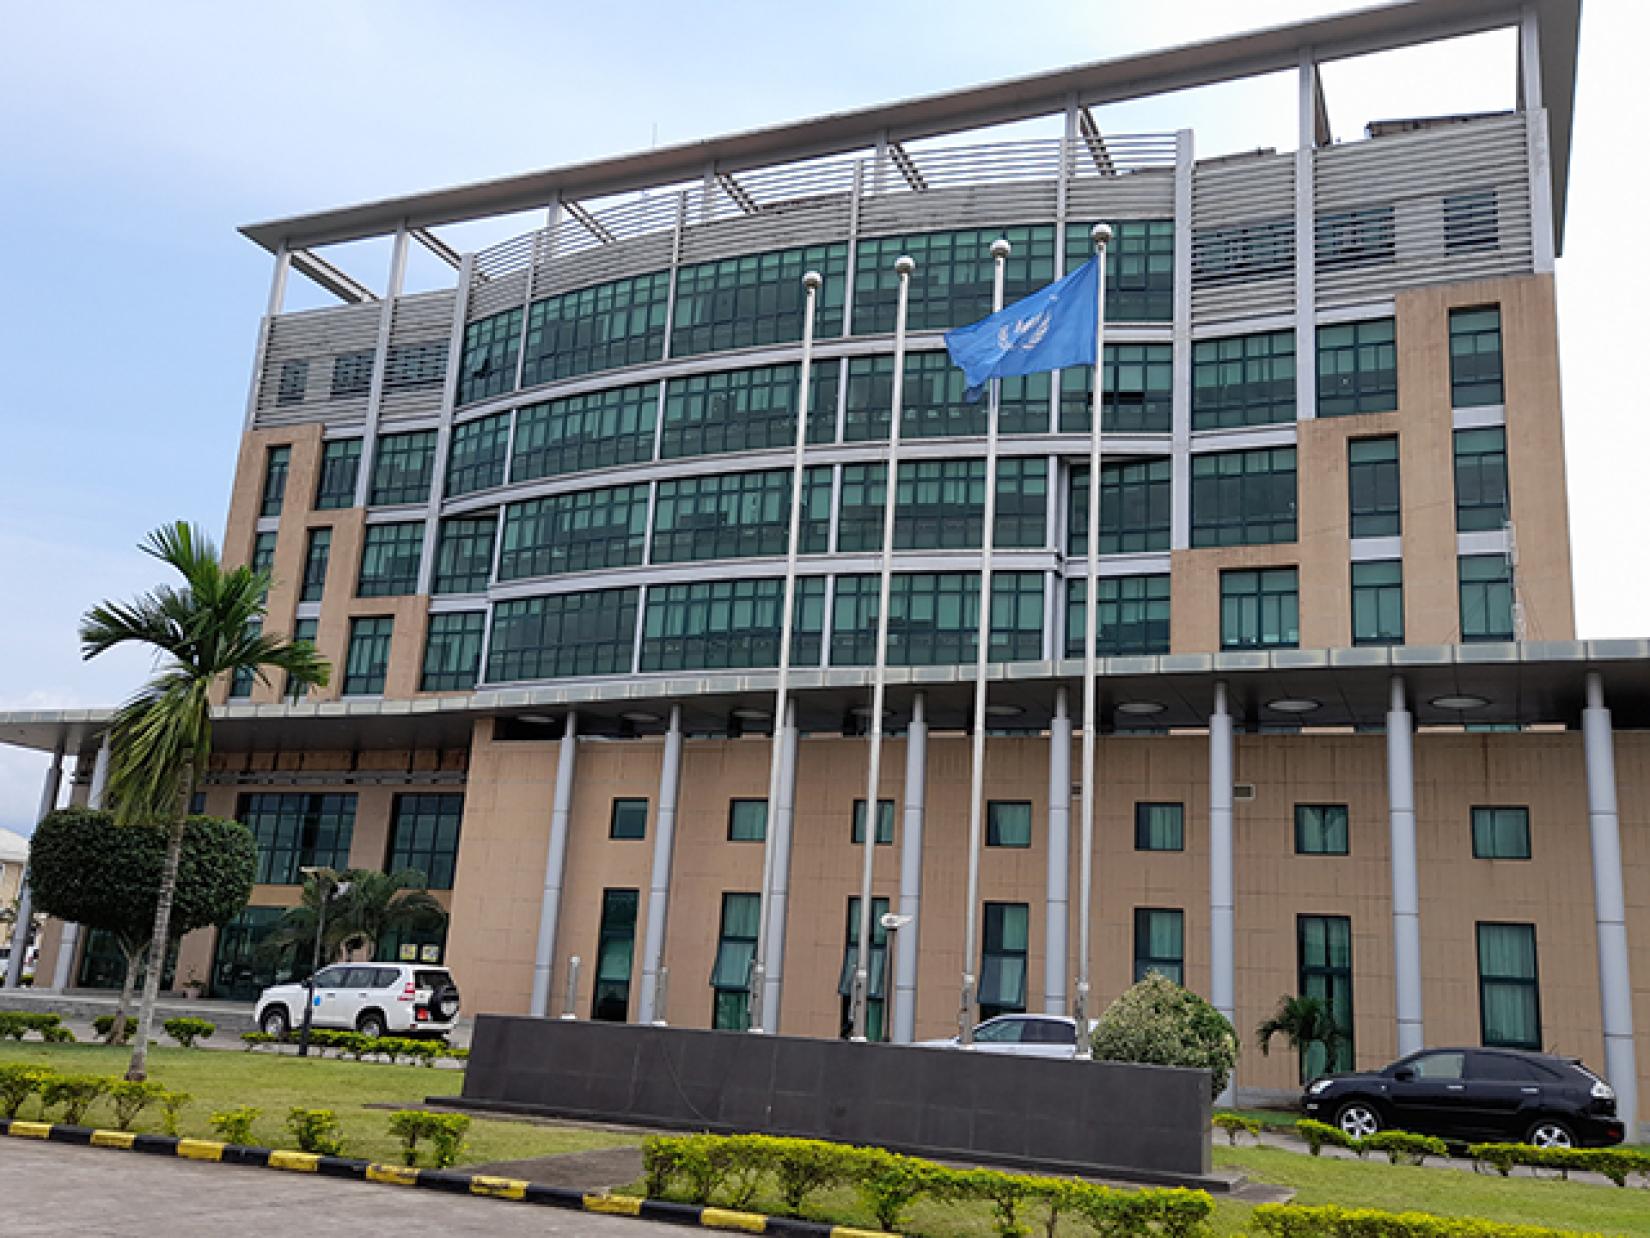 Edificio de las Naciones Unidas en Guinea Ecuatorial